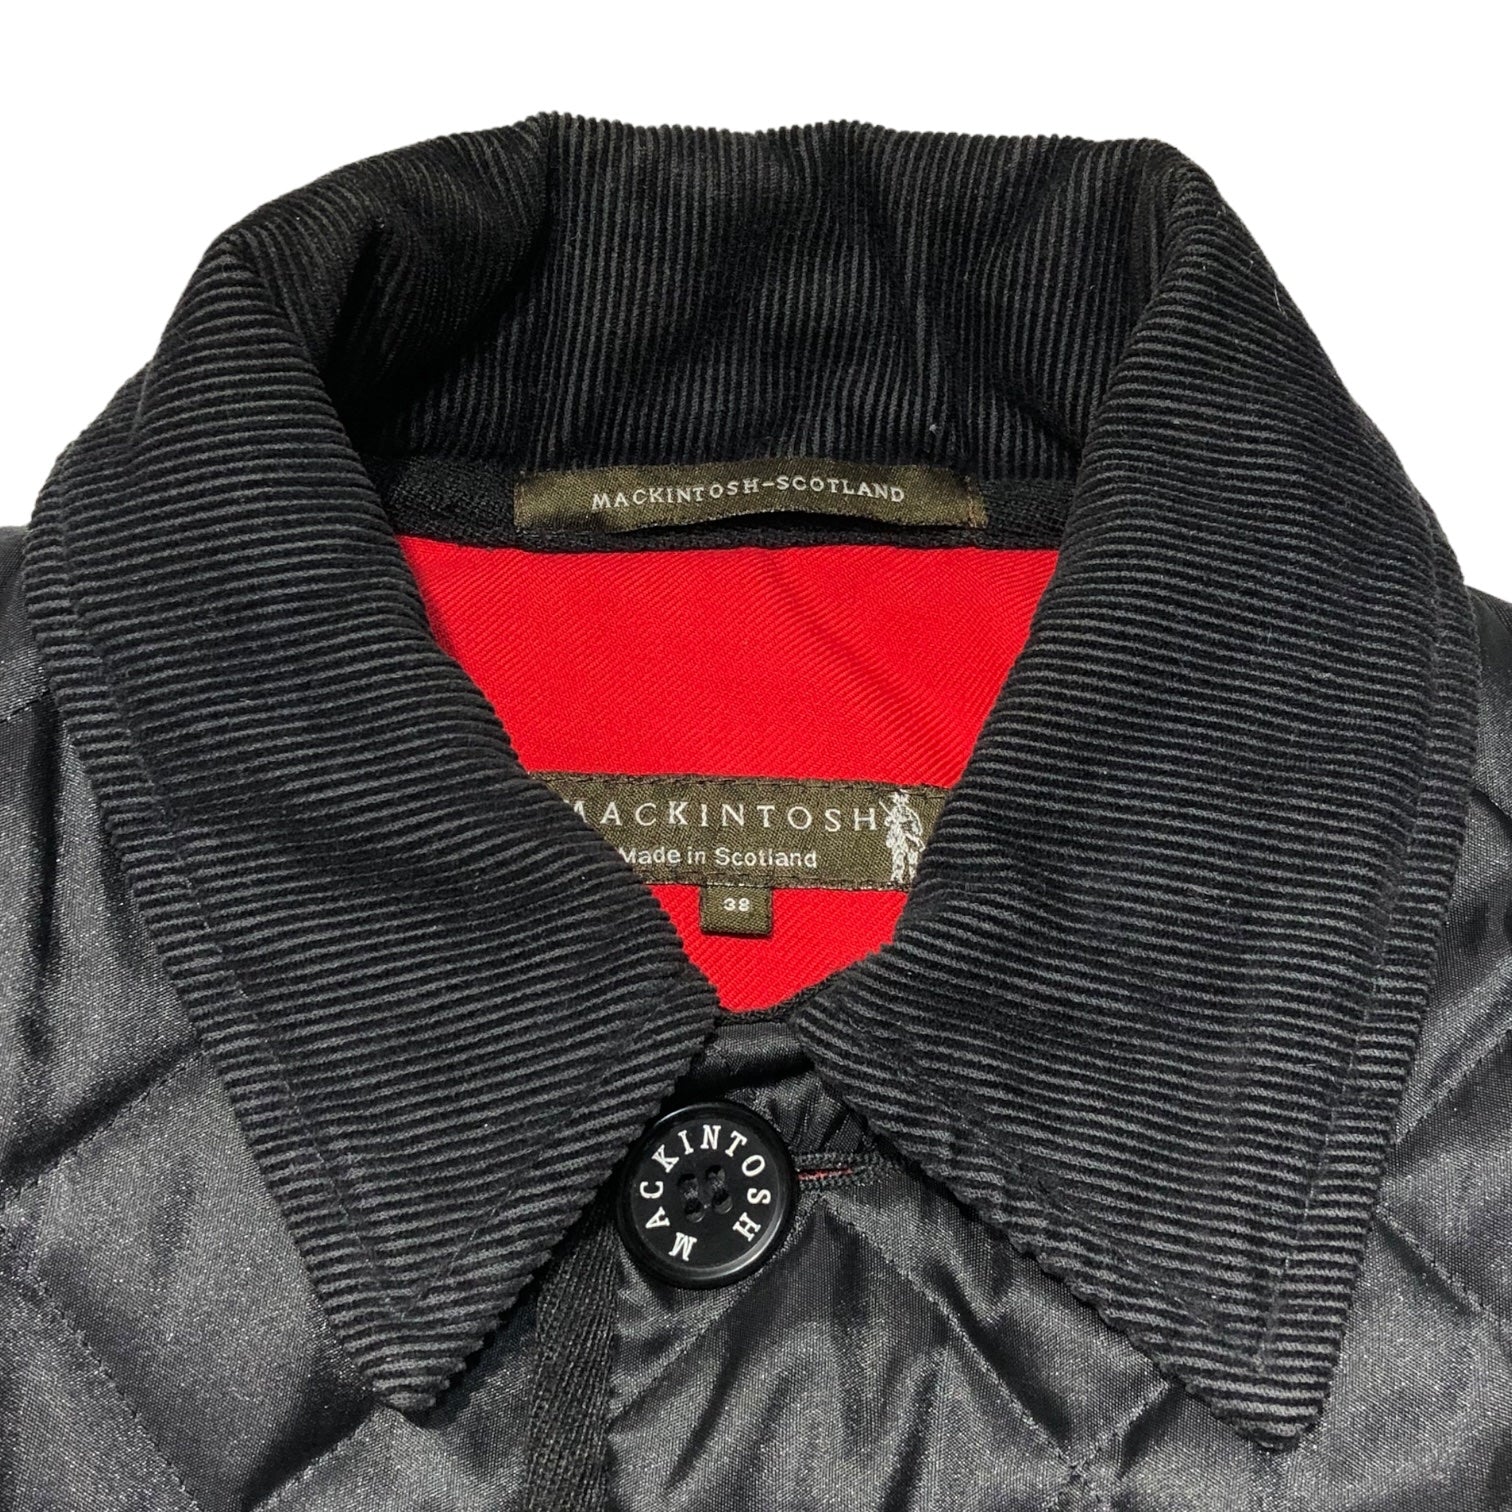 MACKINTOSH(マッキントッシュ) キルティング ジャケット 38(M程度) ブラック×レッド コート 中綿